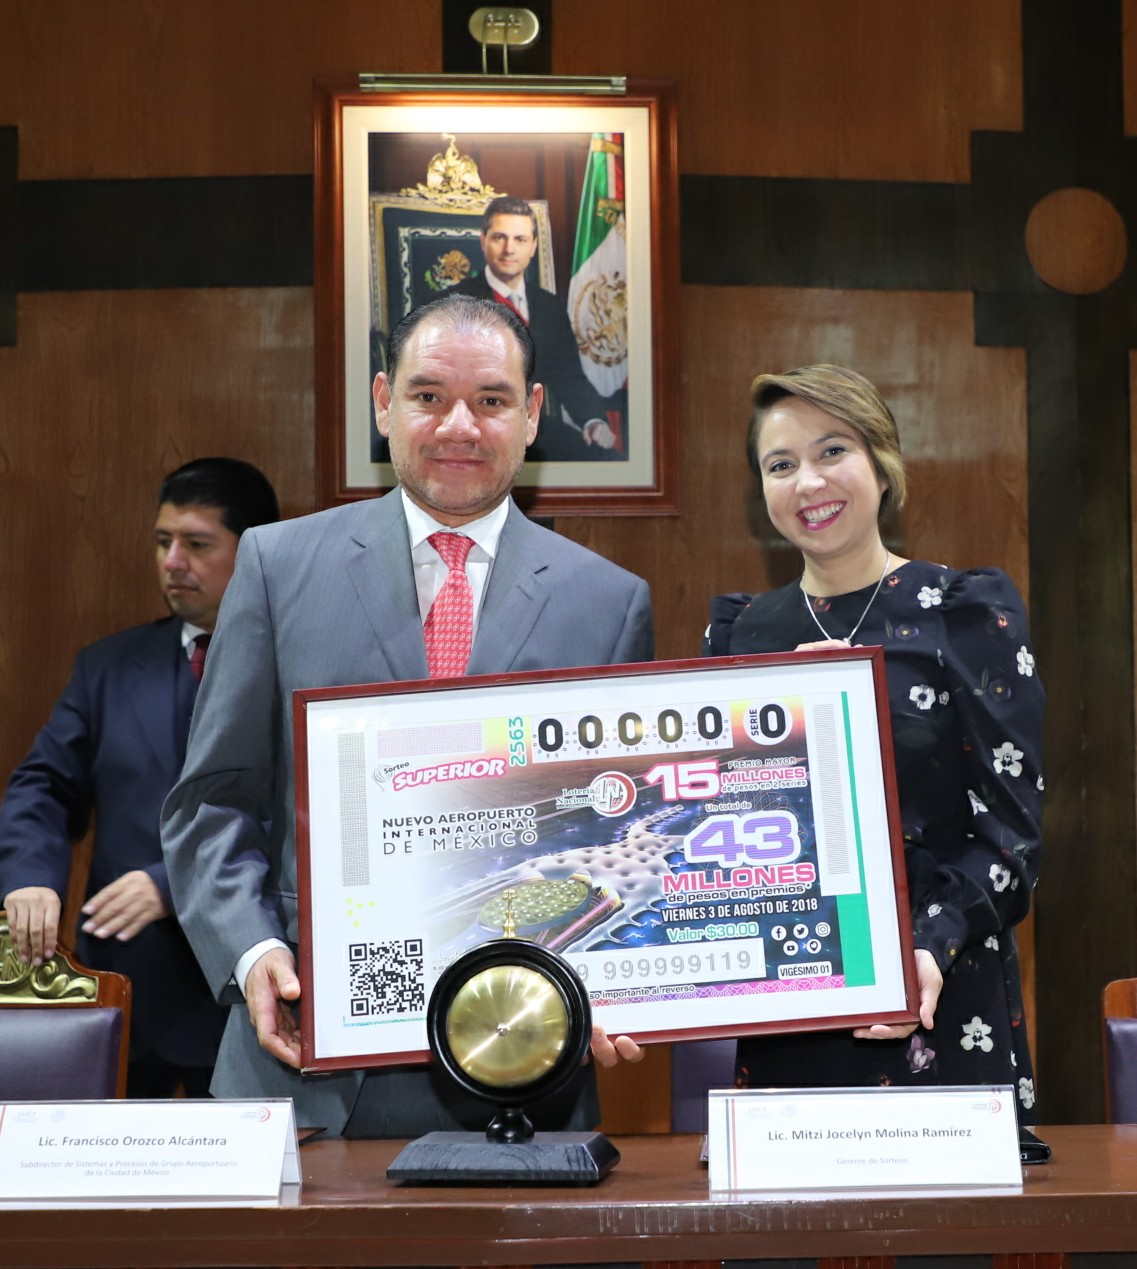 Fotografía donde posan con el billete del Sorteo Superior, de izquierda a derecha: Mitzi Jocelyn Molina Ramírez y Francisco Orozco Alcántara.